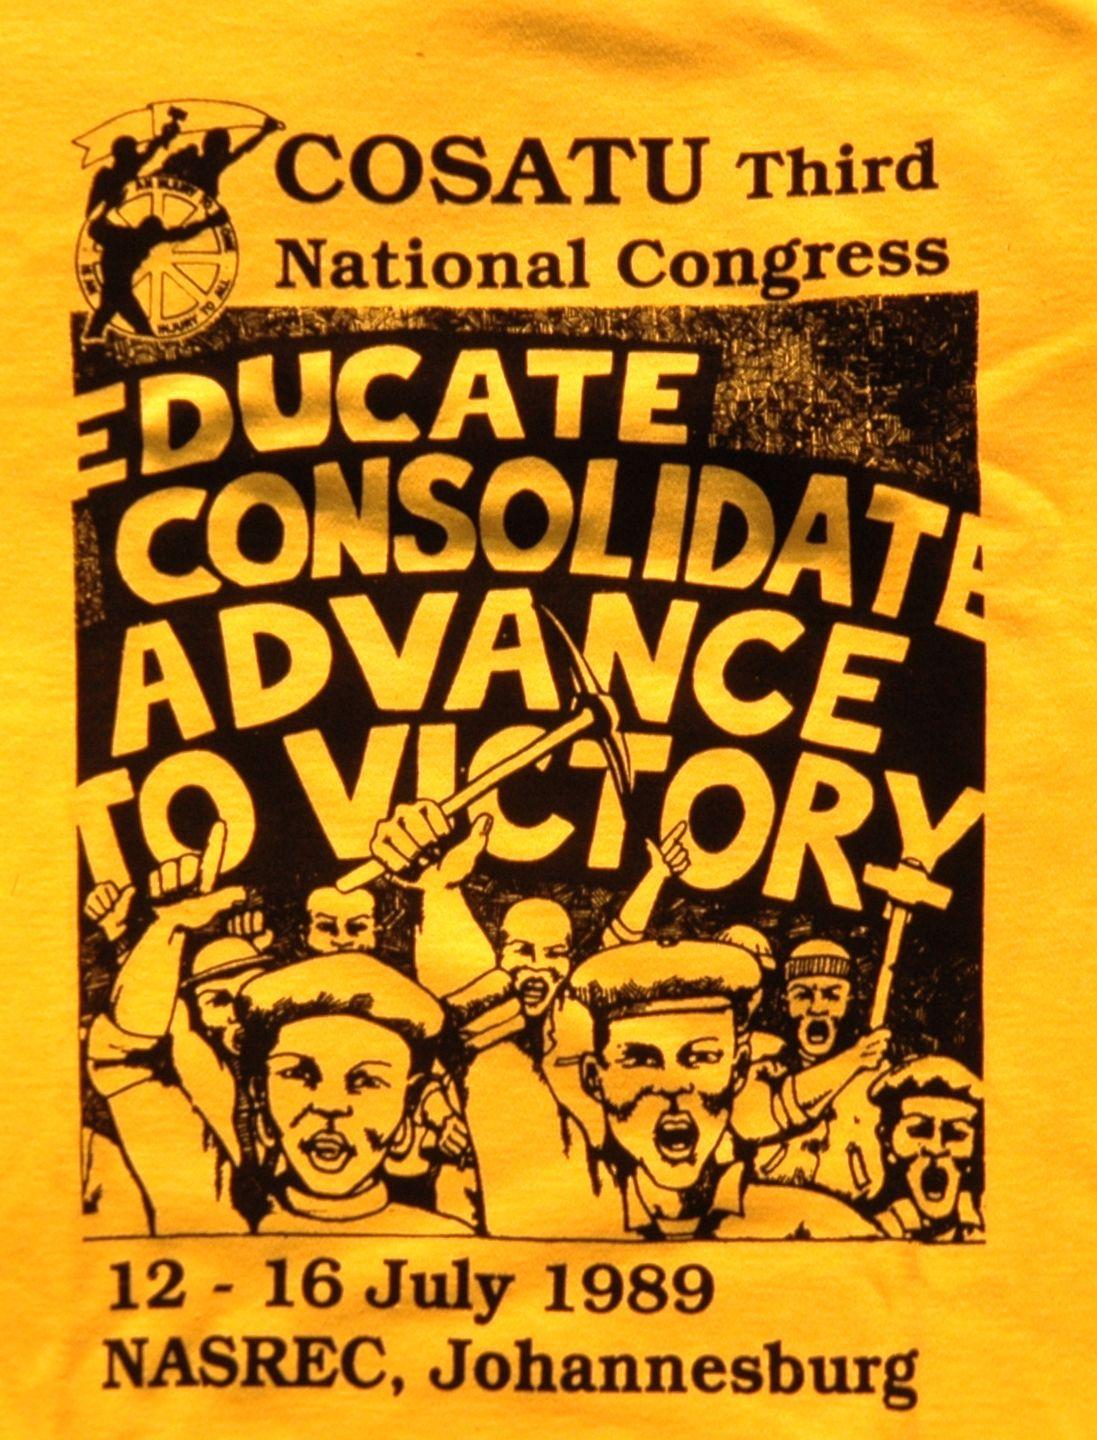 Реклама третьего съезда конгресса профсоюзов южной Африки (COSATU). COSATU был одной из ведущих организаций по борьбе с апартеидом